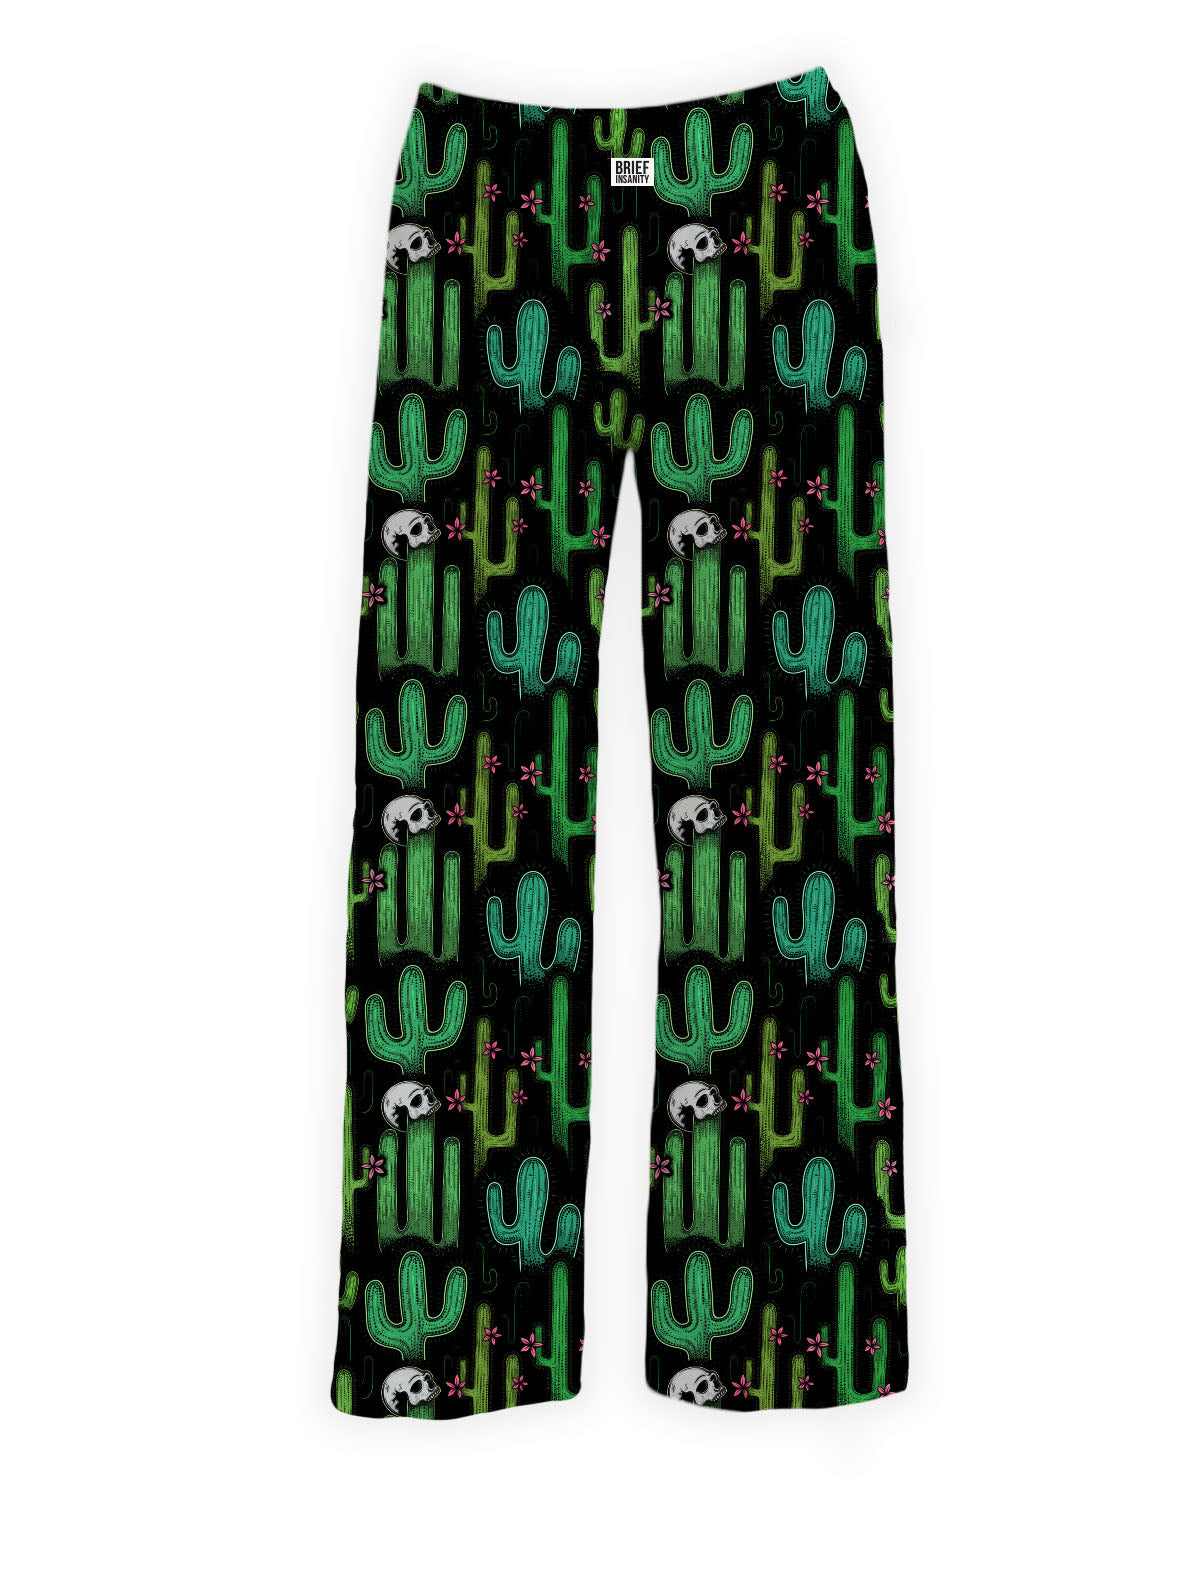 BRIEF INSANITY's Dark Cactus Pajama Lounge Pants